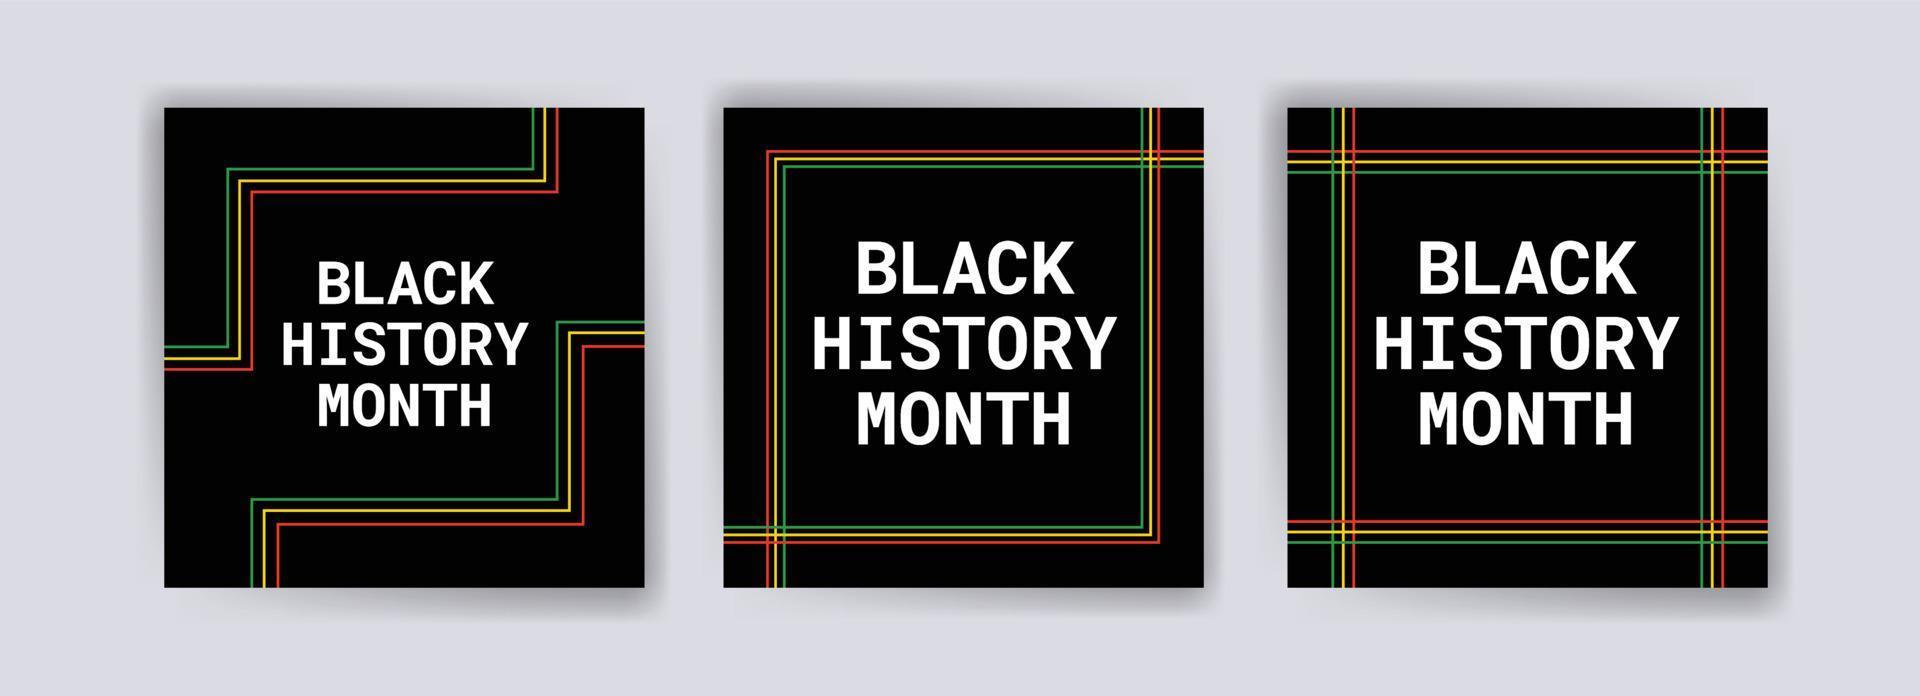 colección de publicaciones en redes sociales del mes de la historia negra. celebrando el mes de la historia negra. vector